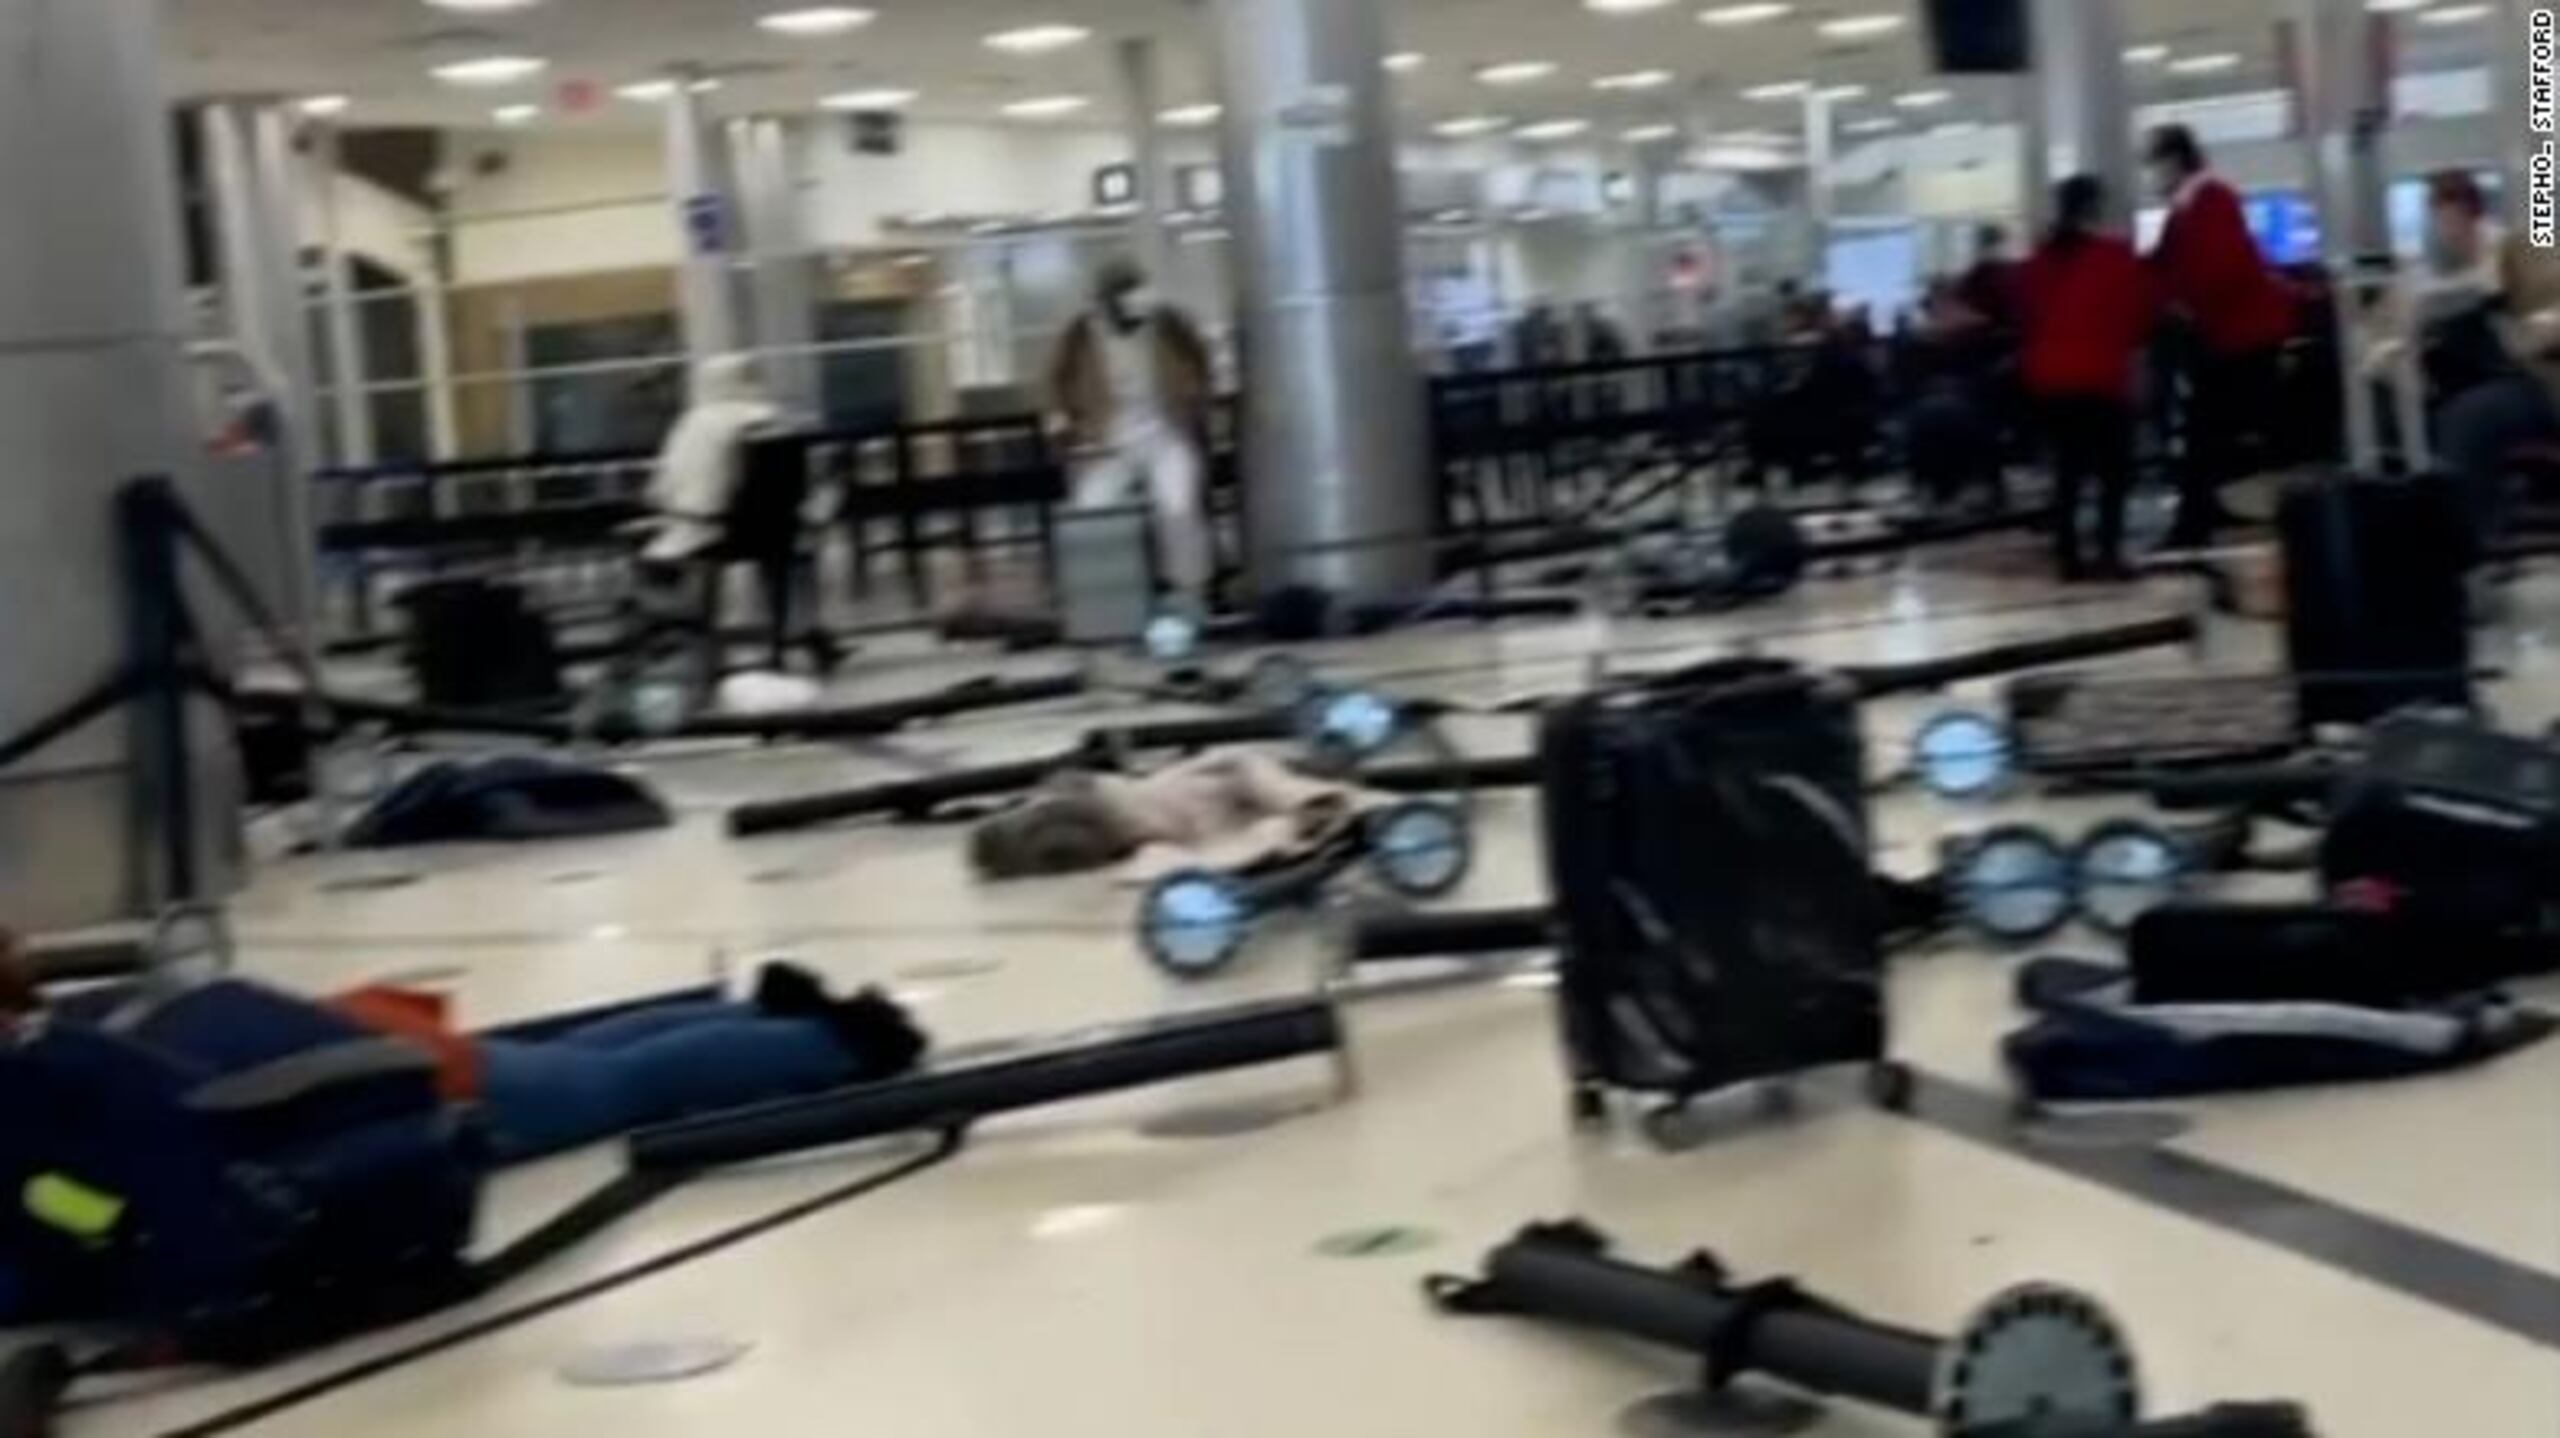 Pasajeros y oficiales del aeropuerto entraron en pánico tras las detonaciones de un arma de fuego, llevándolos a evacuar el plantel de manera abrupta.